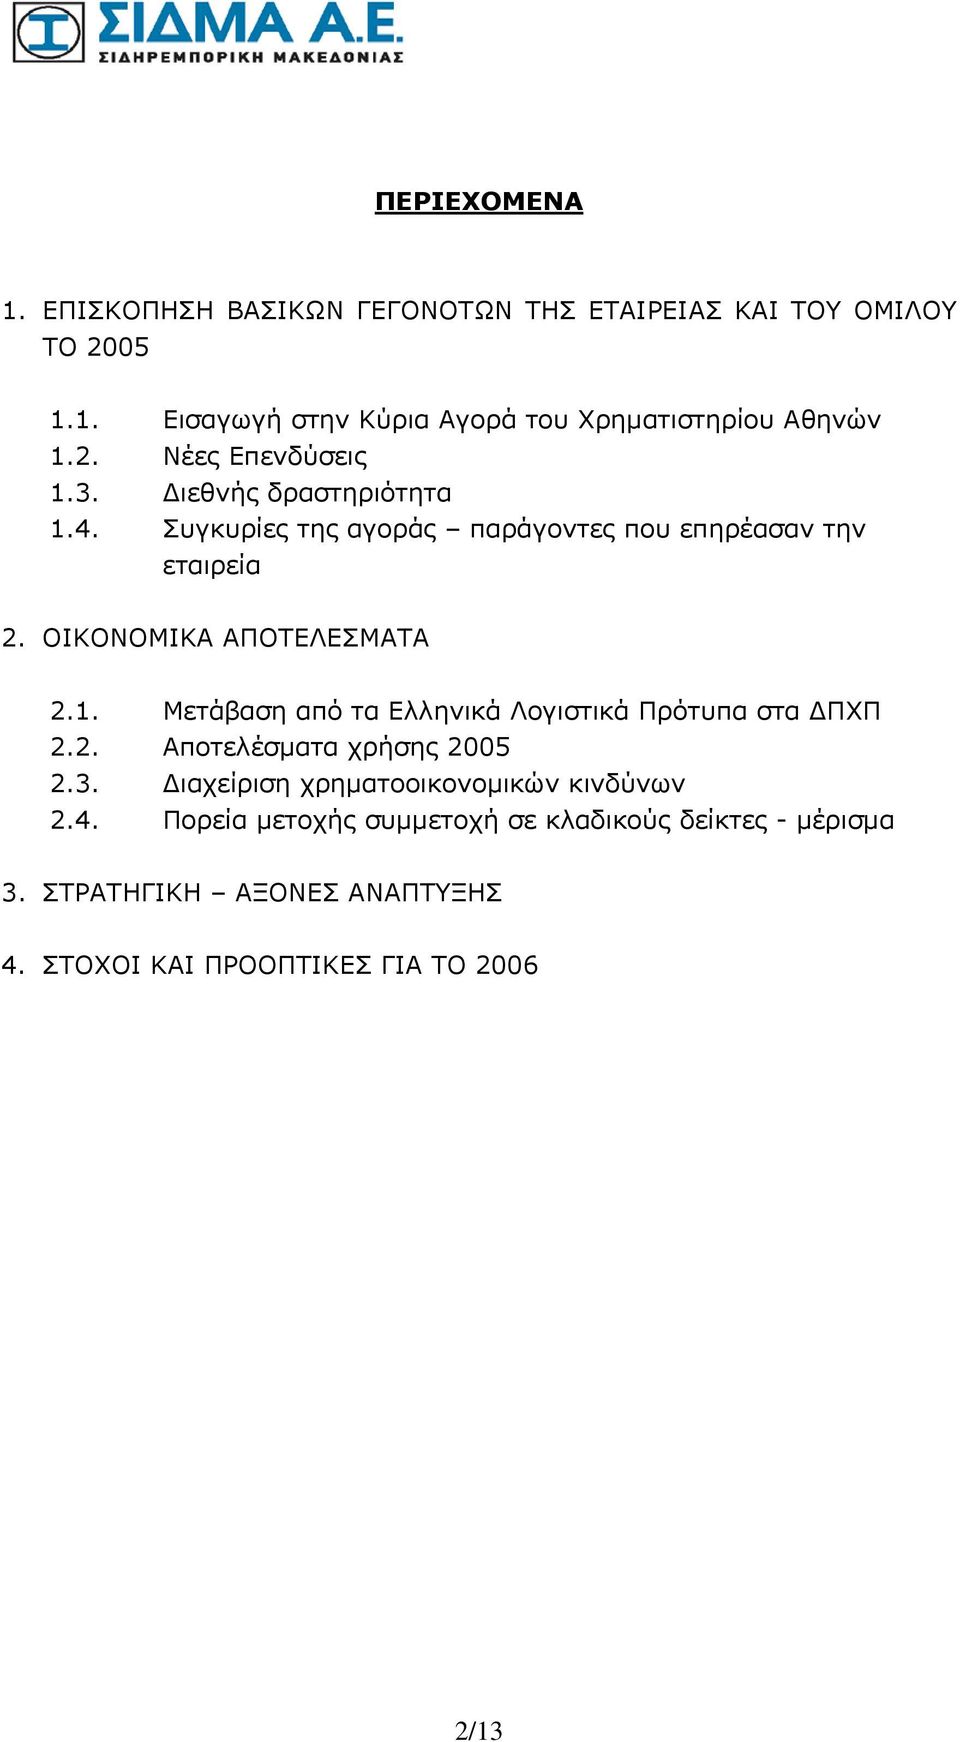 ΟΙΚΟΝΟΜΙΚΑ ΑΠΟΤΕΛΕΣΜΑΤΑ 2.1. Μετάβαση από τα Ελληνικά Λογιστικά Πρότυπα στα ΔΠΧΠ 2.2. Αποτελέσματα χρήσης 2005 2.3.